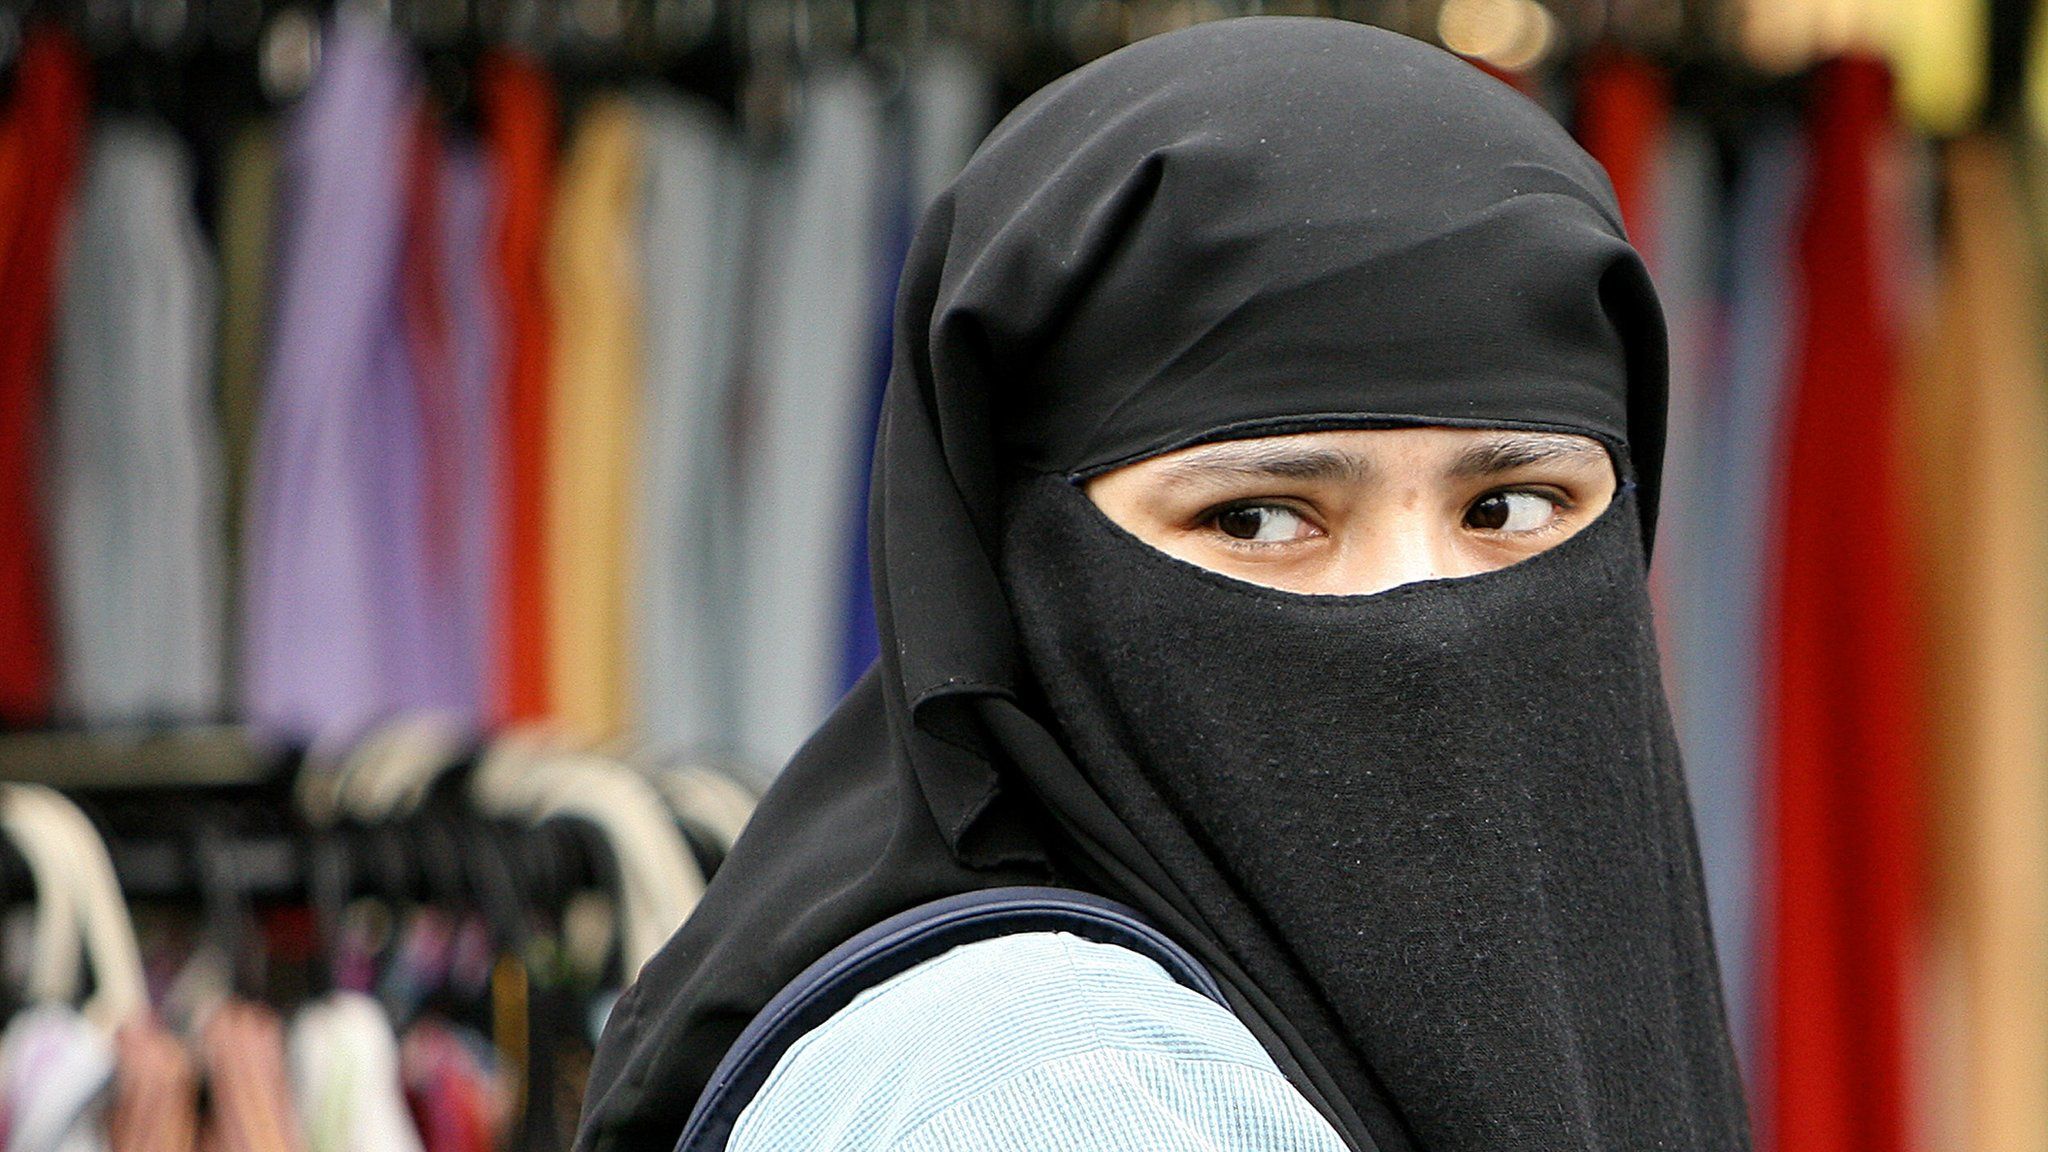 Woman wearing face veil in east London in 2006